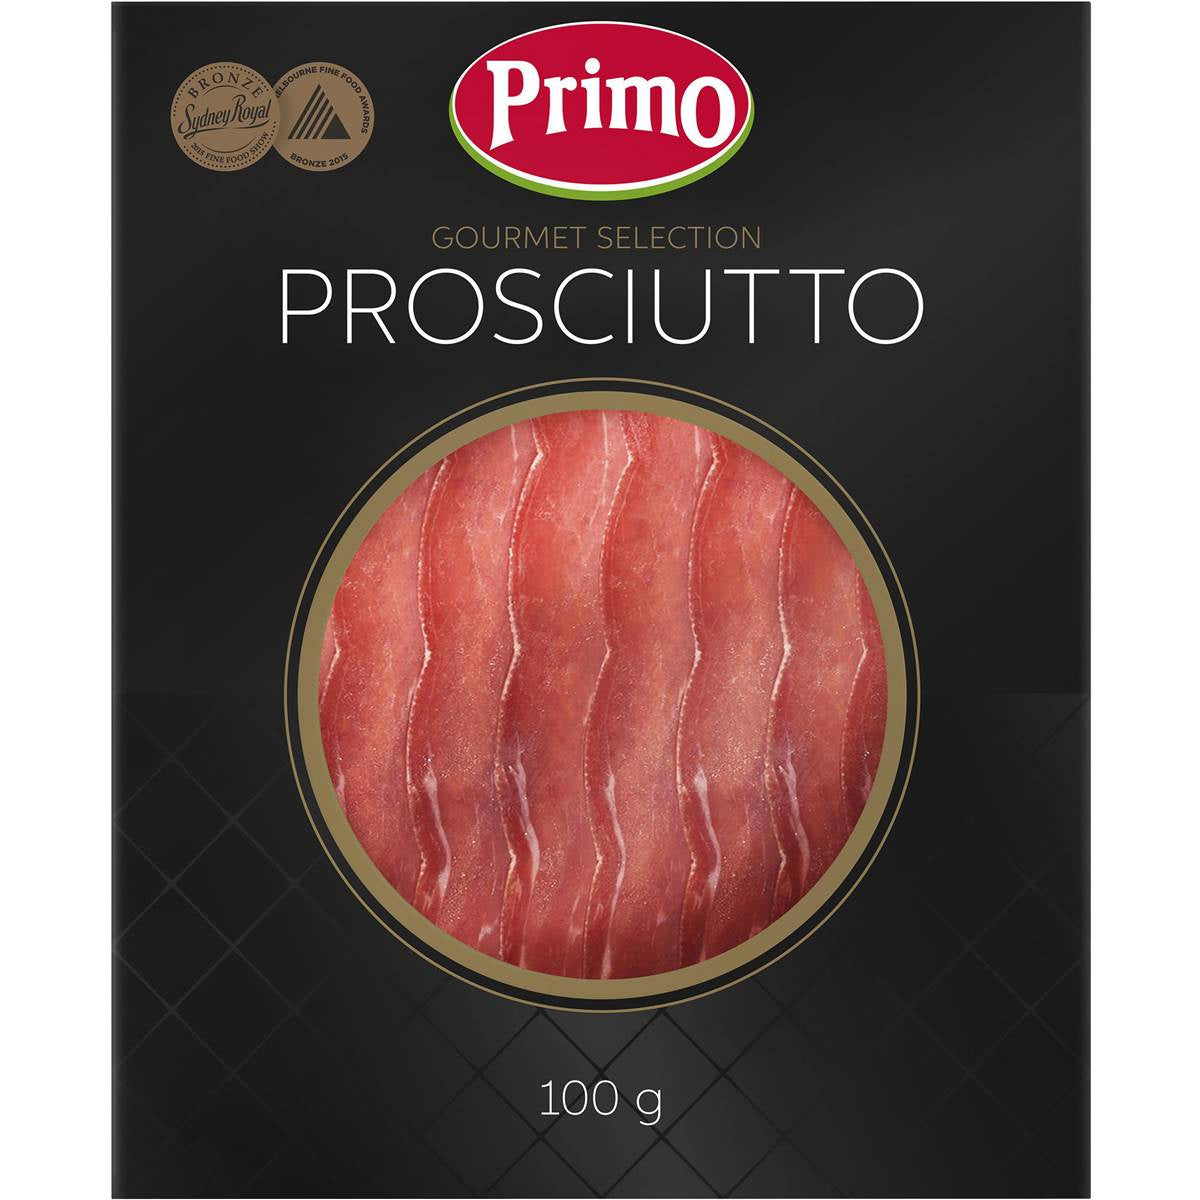 Primo Gourmet Prosciutto 100g